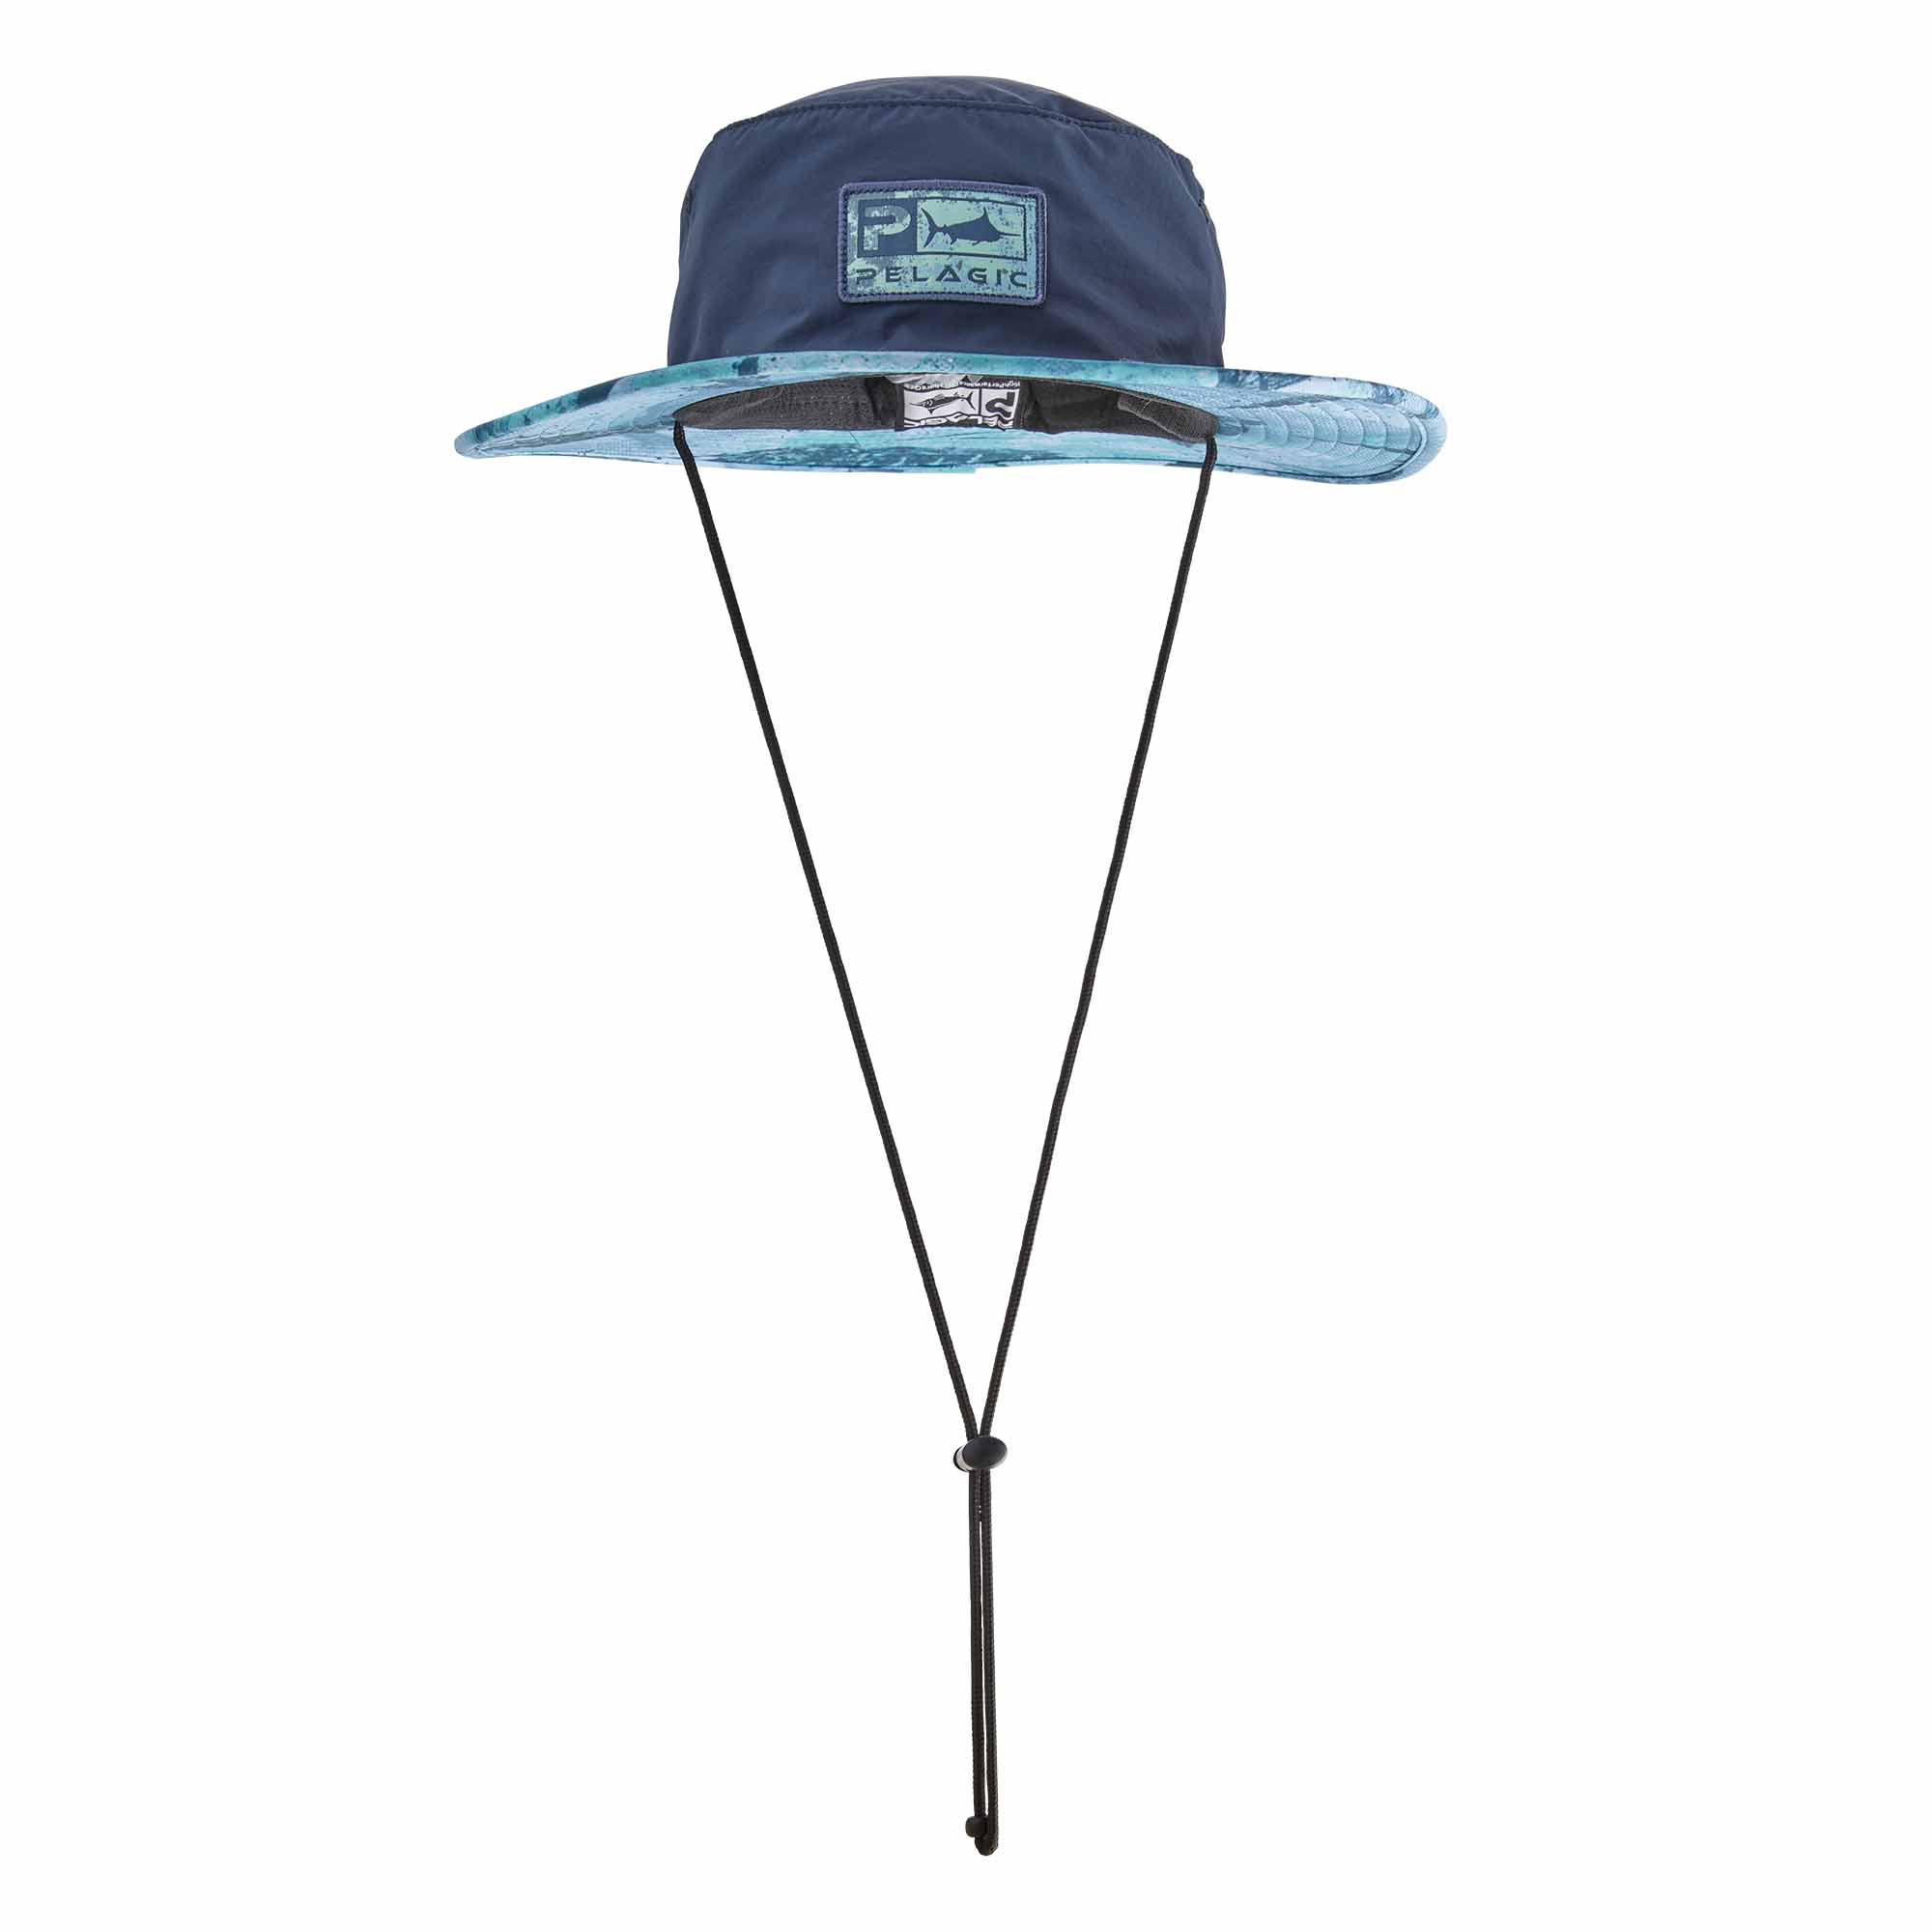 Pelagic SunSetter Pro Bucket Hat in Blue